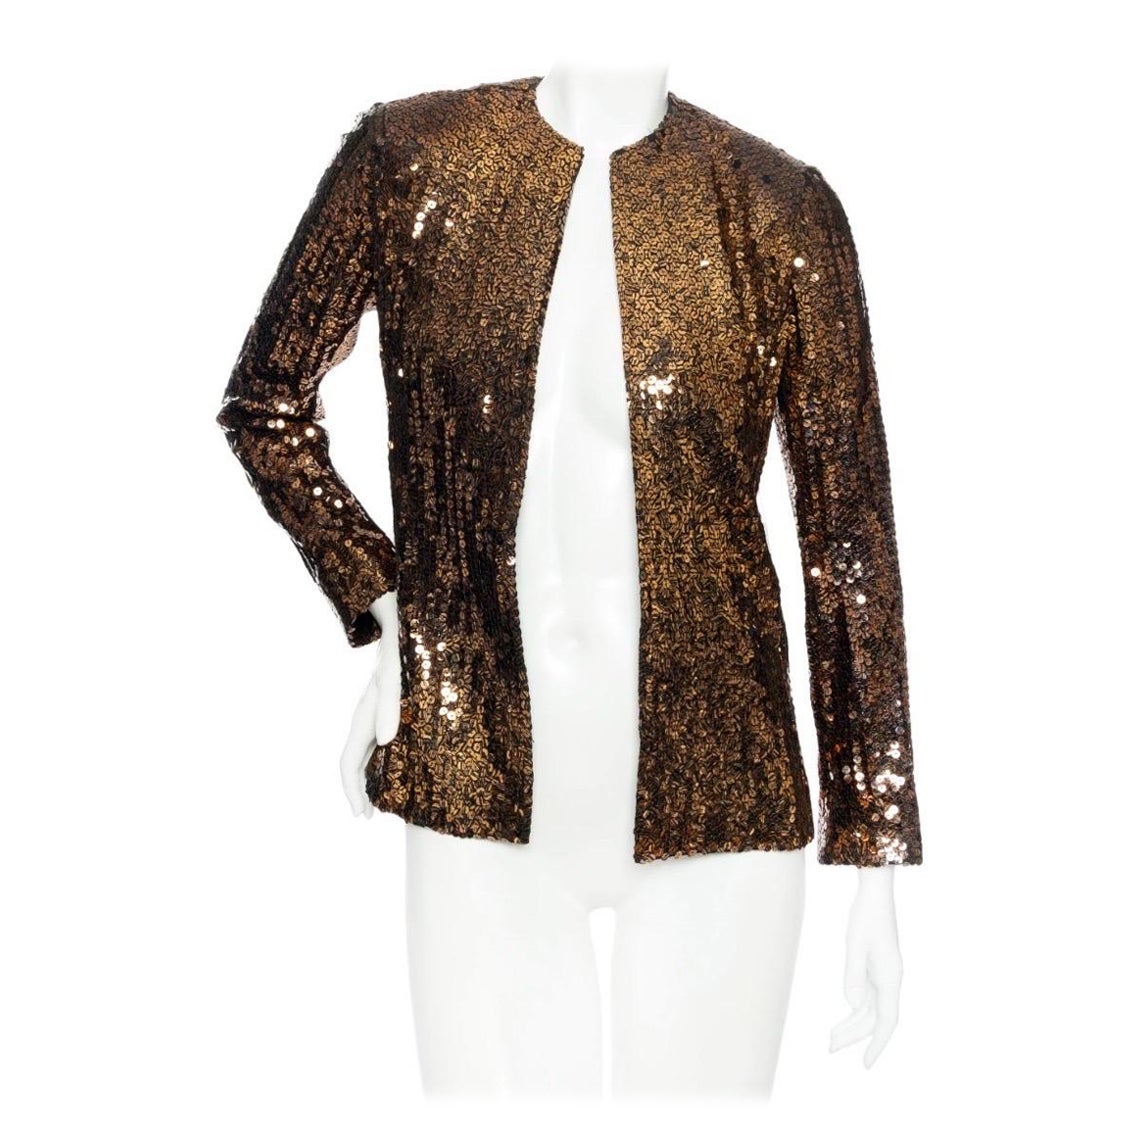 Christian Dior 1960s Copper and Black Tiger Print Sequin Jacket (Veste à paillettes)